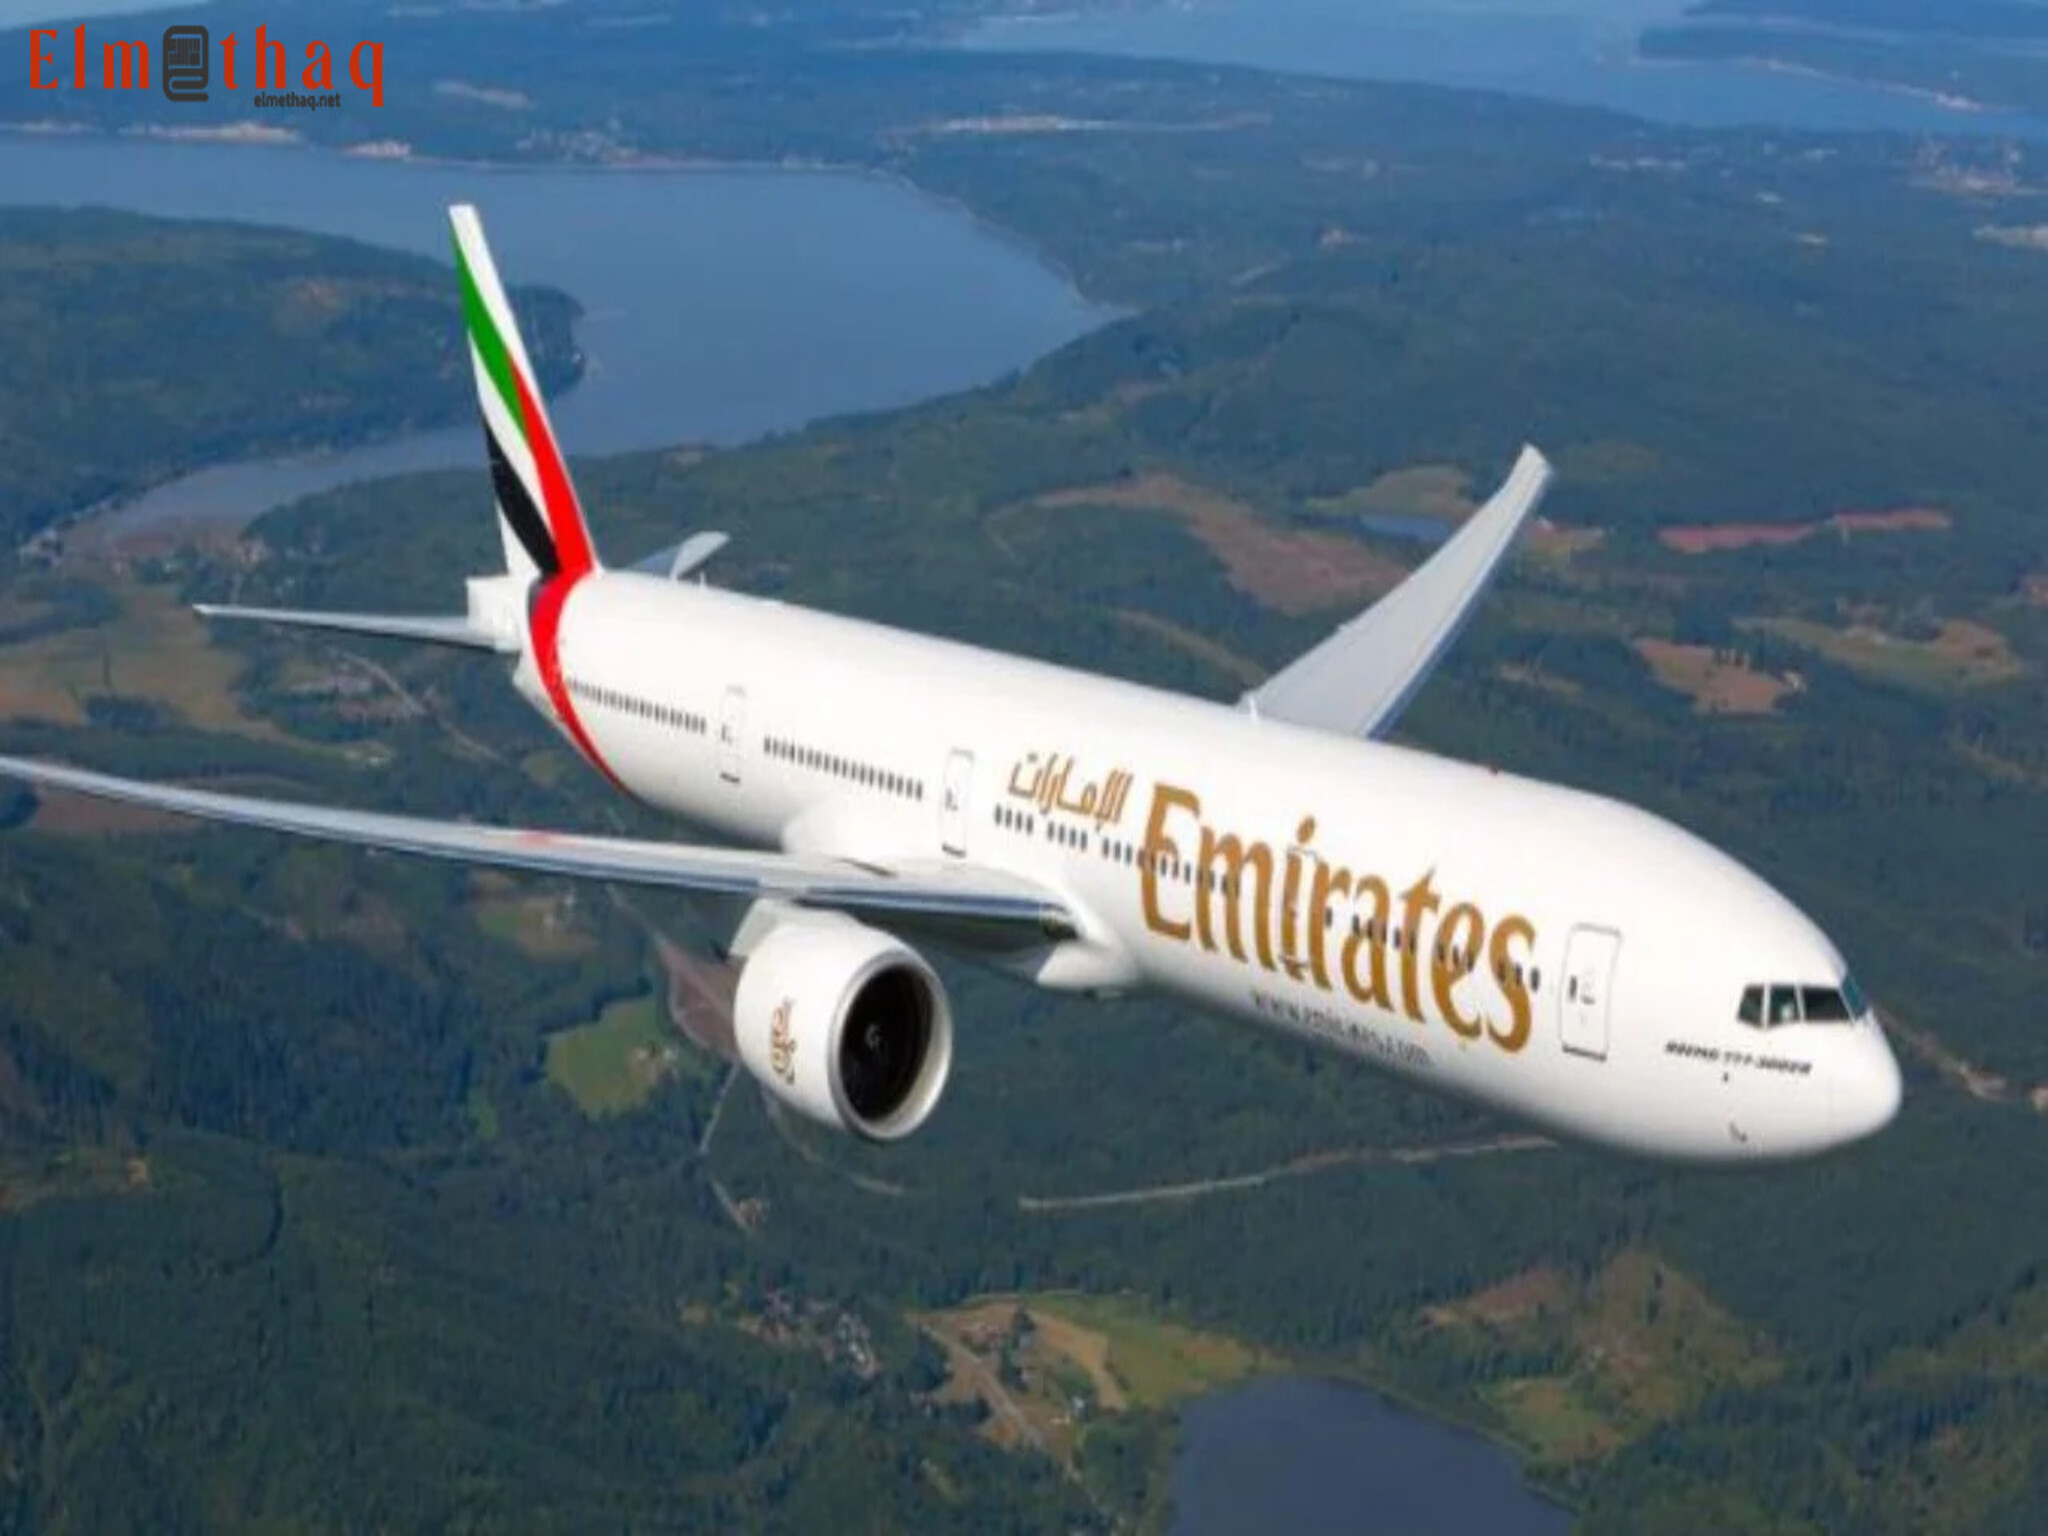 Emirates announces flight resumption from Dubai to Lagos in Nigeria on October 1